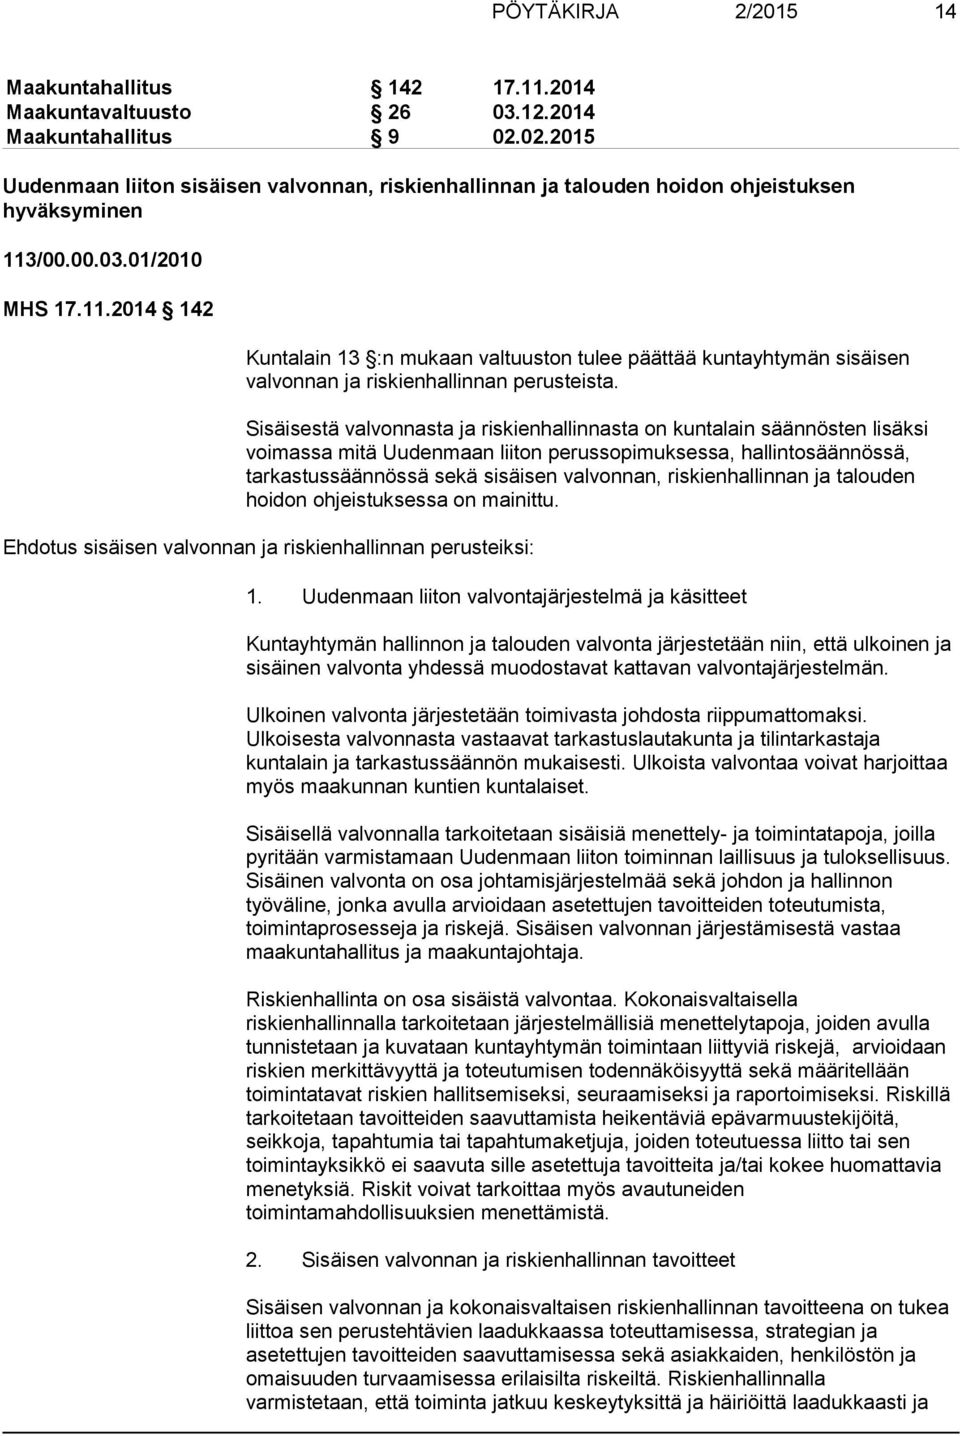 /00.00.03.01/2010 MHS 17.11.2014 142 Kuntalain 13 :n mukaan valtuuston tulee päättää kuntayhtymän sisäisen valvonnan ja riskienhallinnan perusteista.